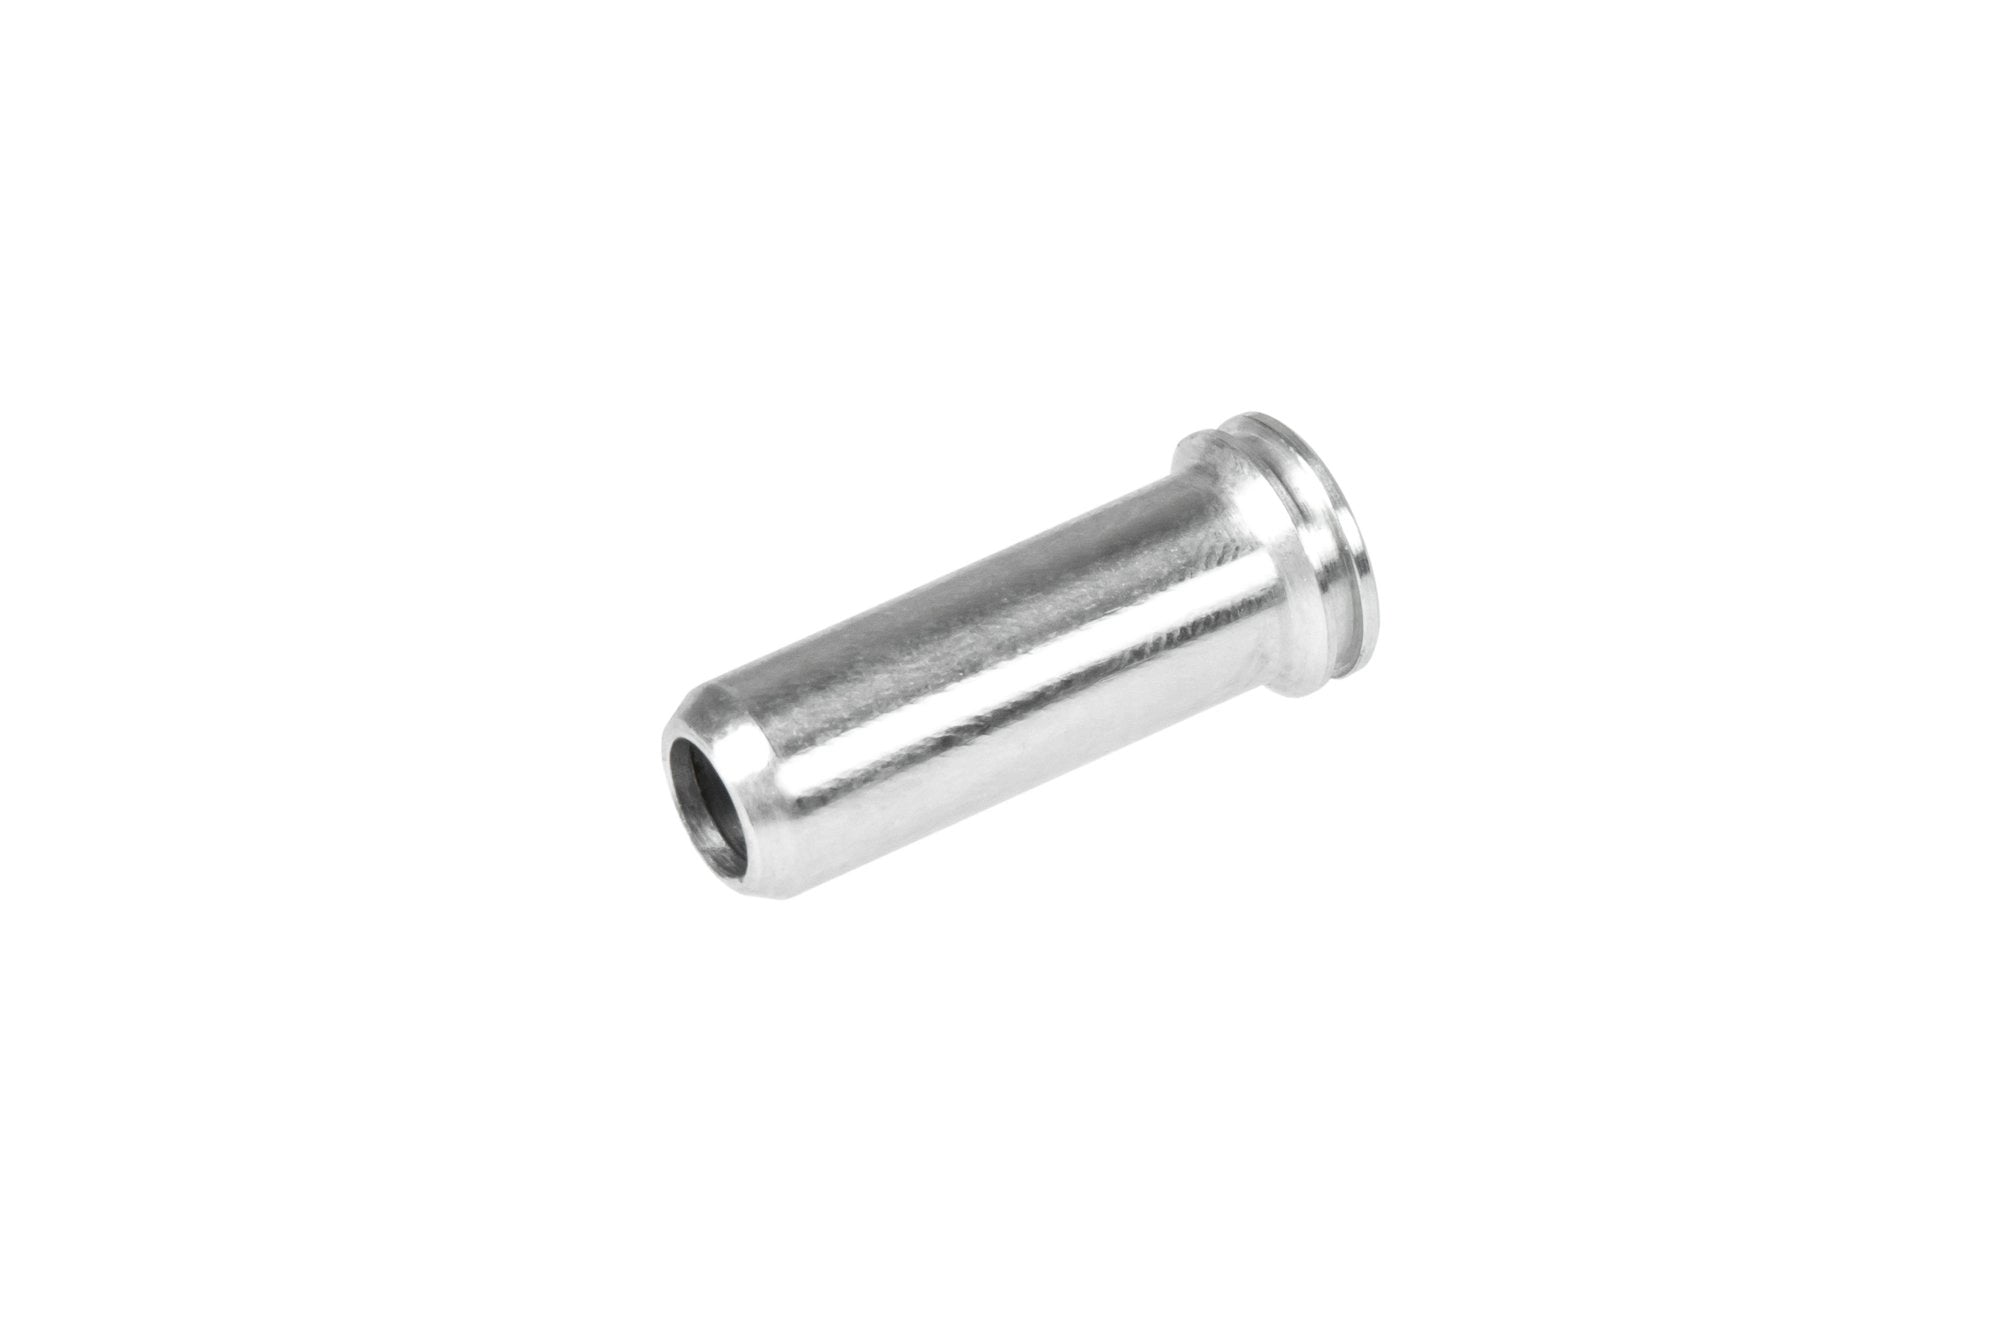 Aluminum CNC Nozzle - 21.3 mm